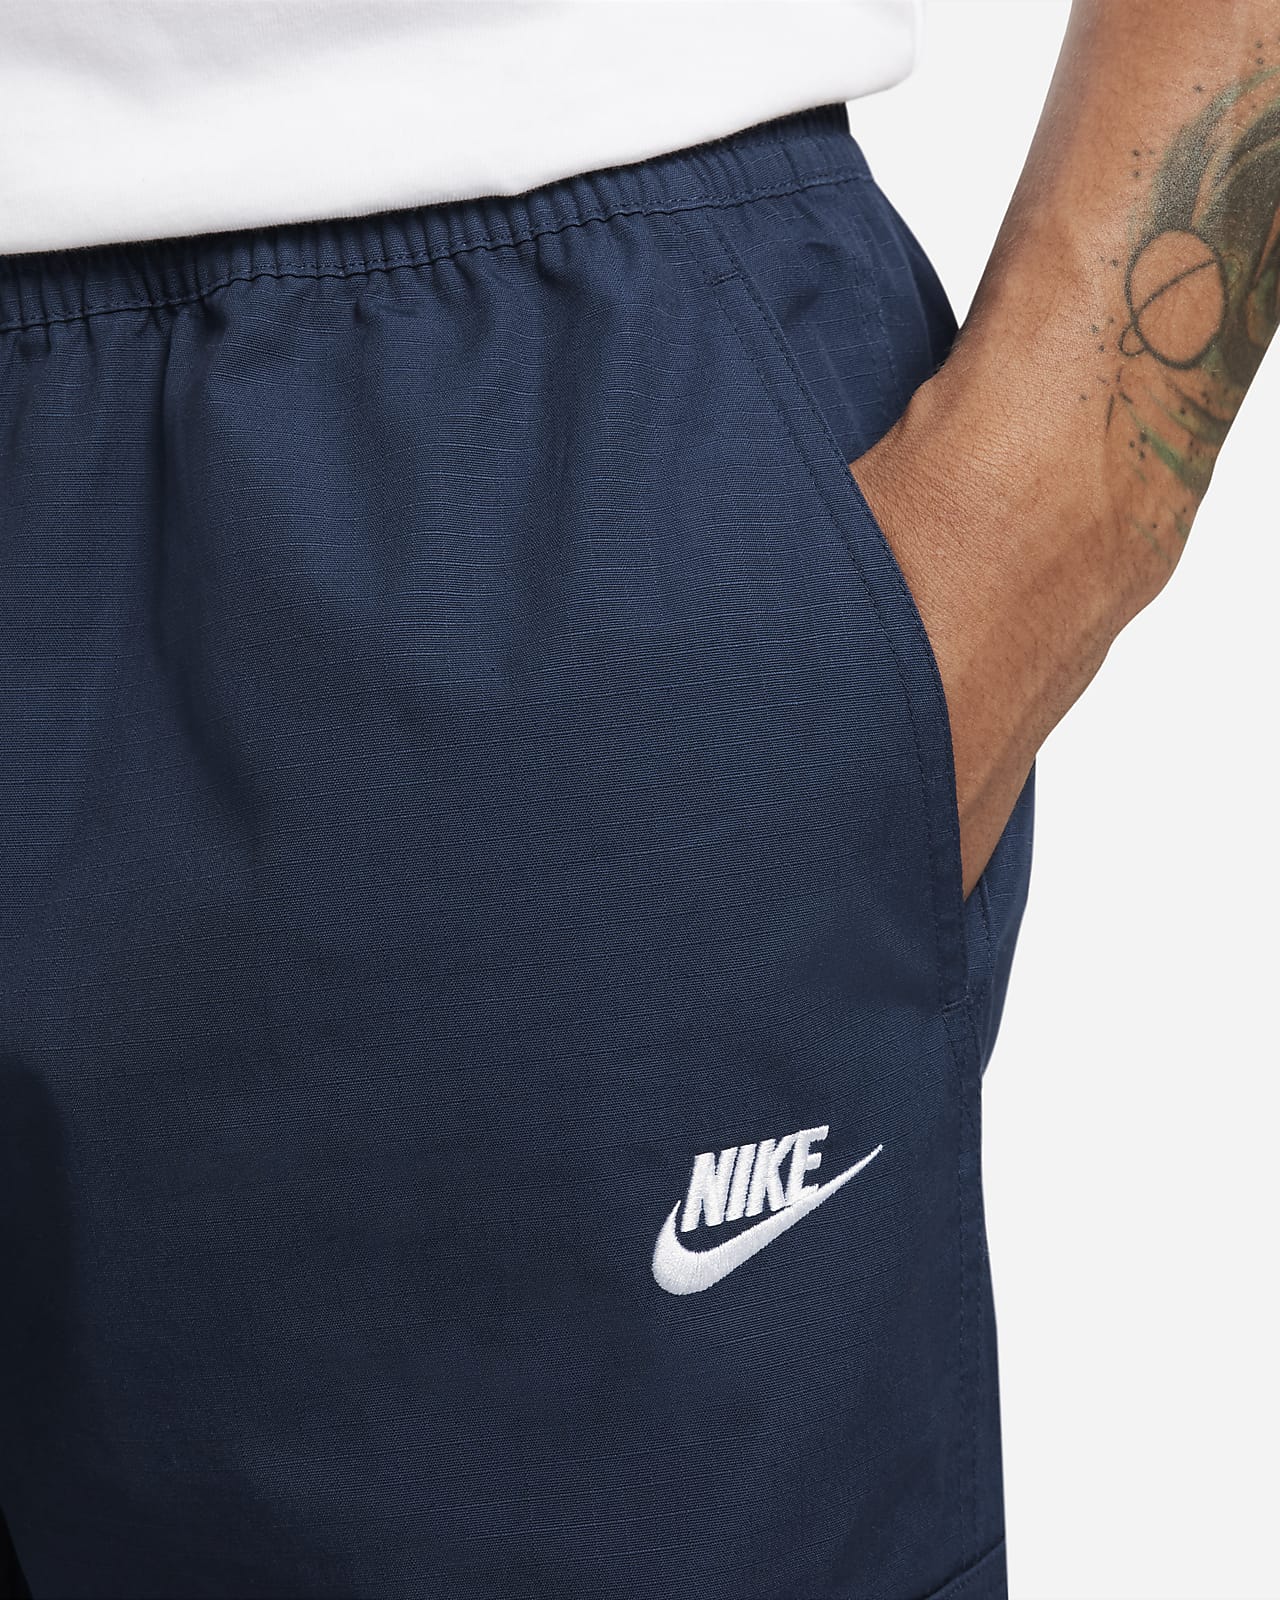 Buy Nike Men's Woven Cargo Pants Online